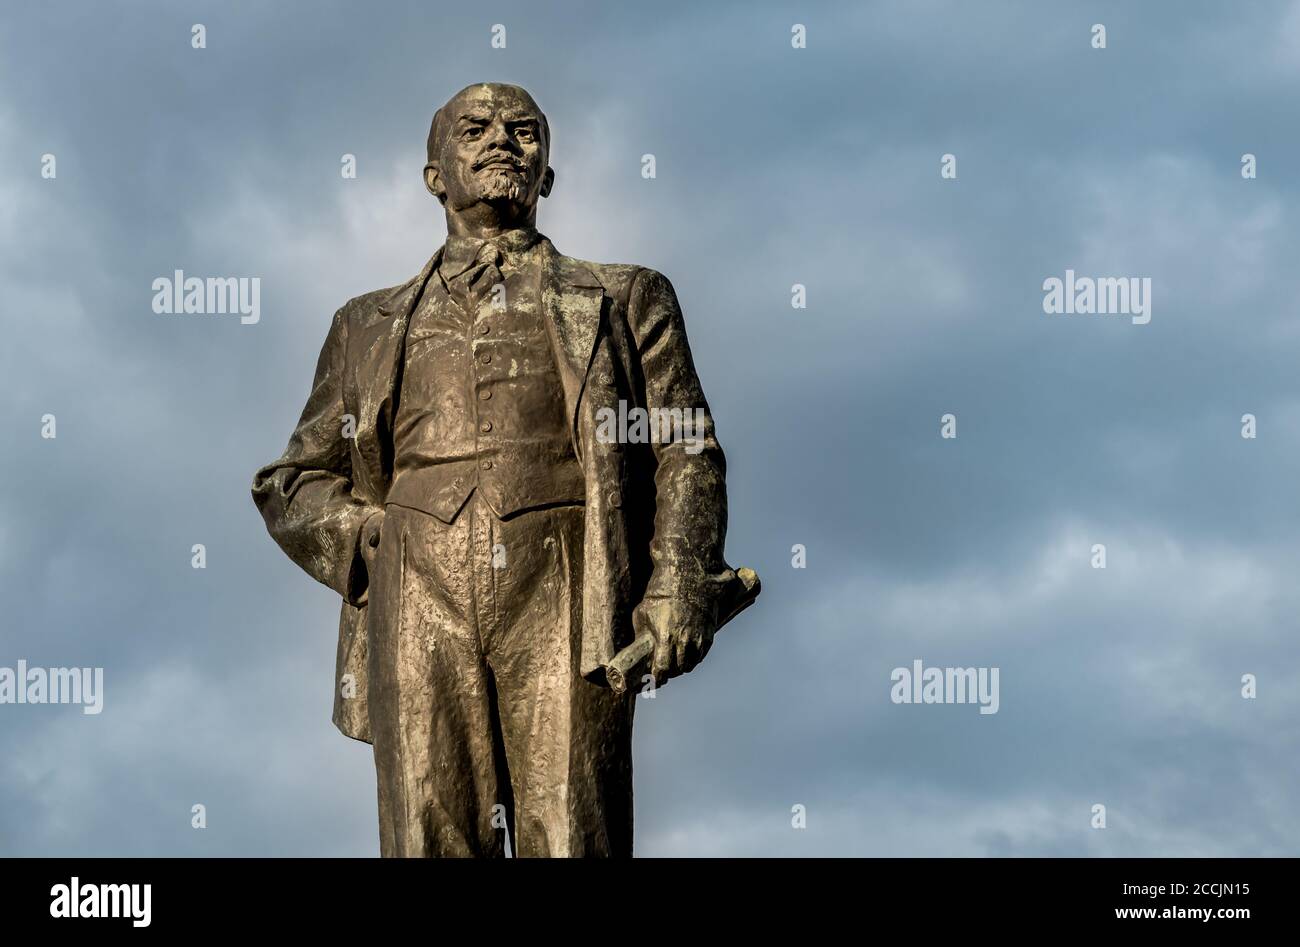 Pskow, Russische Föderation - 4. Mai 2018: Denkmal Wladimir Iljitsch Lenin auf dem Leninplatz im Zentrum Pskows, Russland Stockfoto